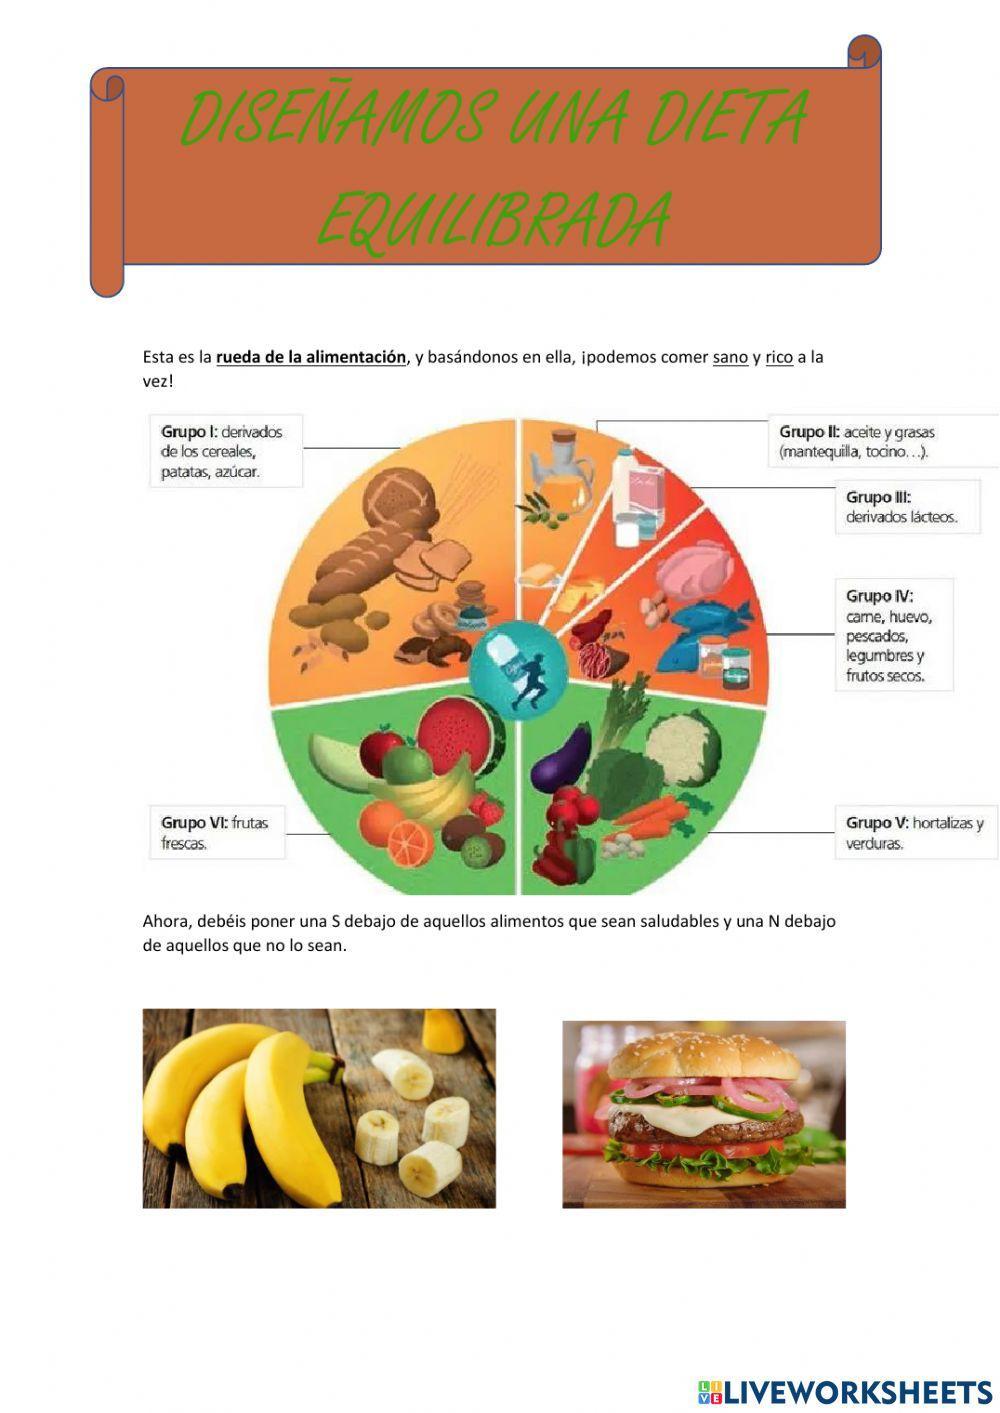 Diseño de una dieta equilibrada (2)